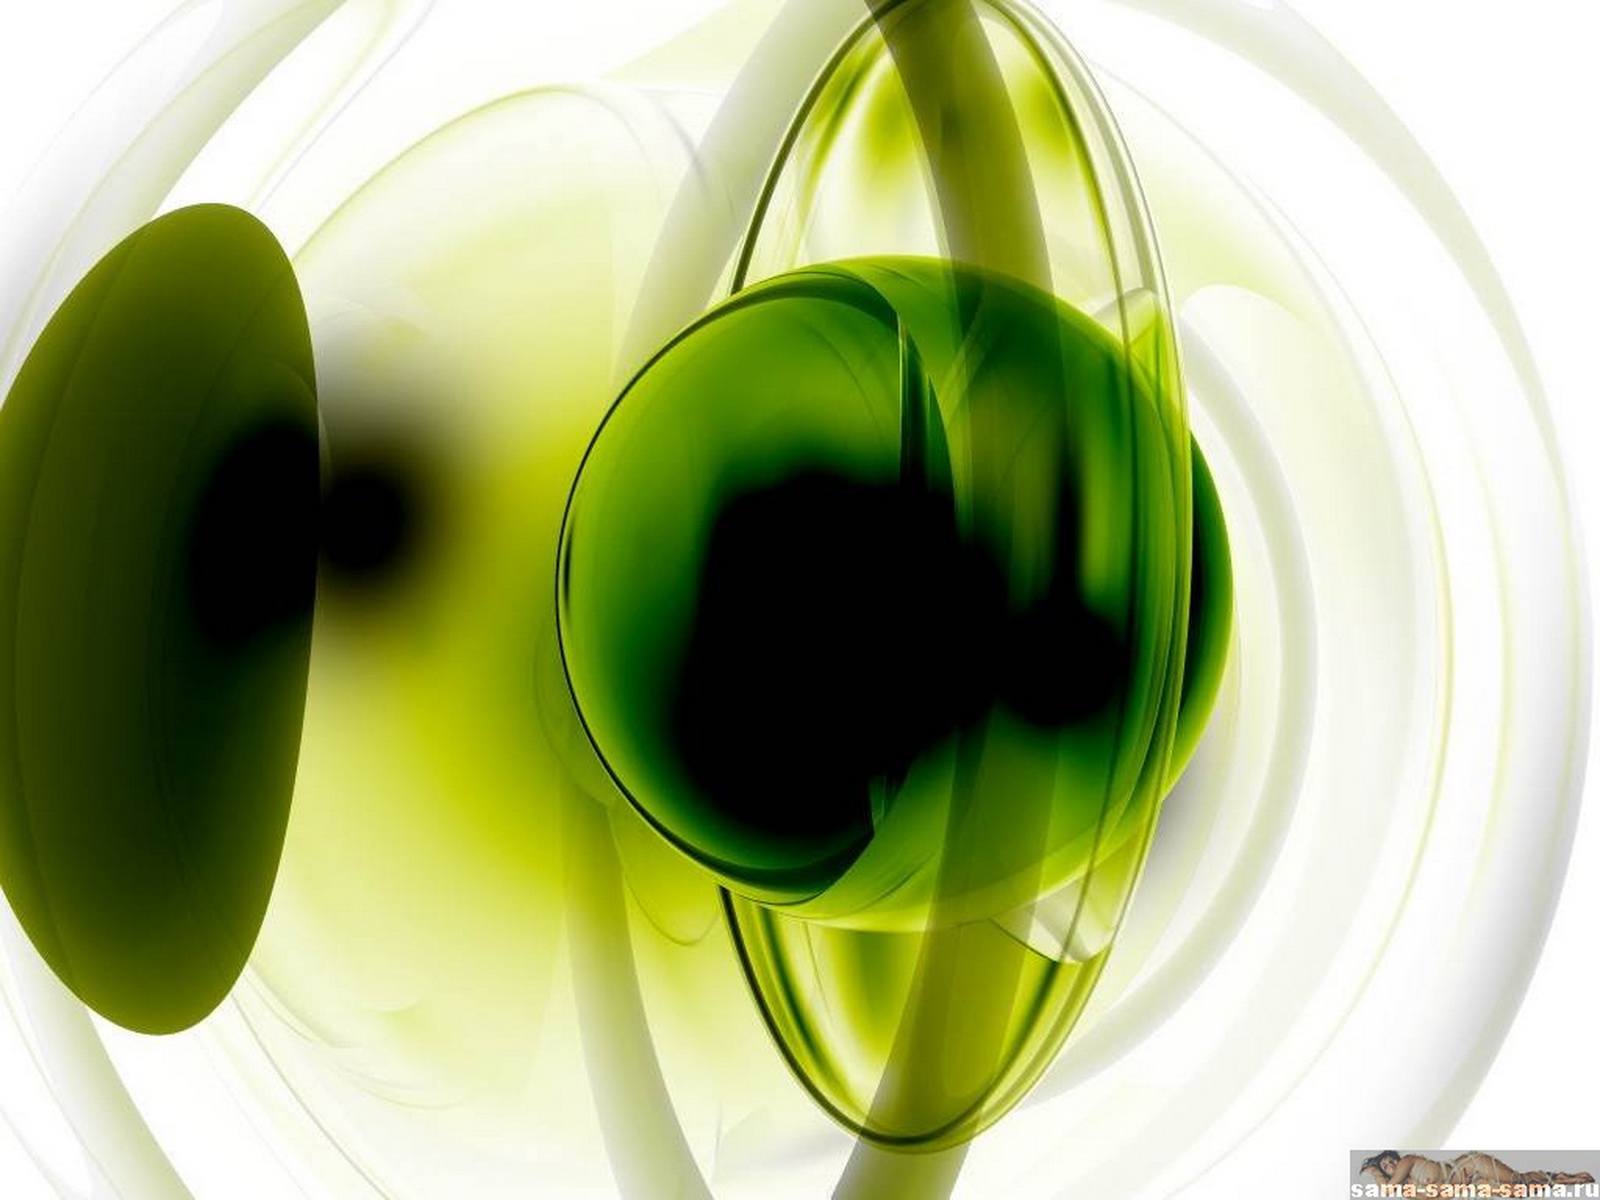 хлорофил, зеленый шар в стекле, 3D обои для рабочего стола